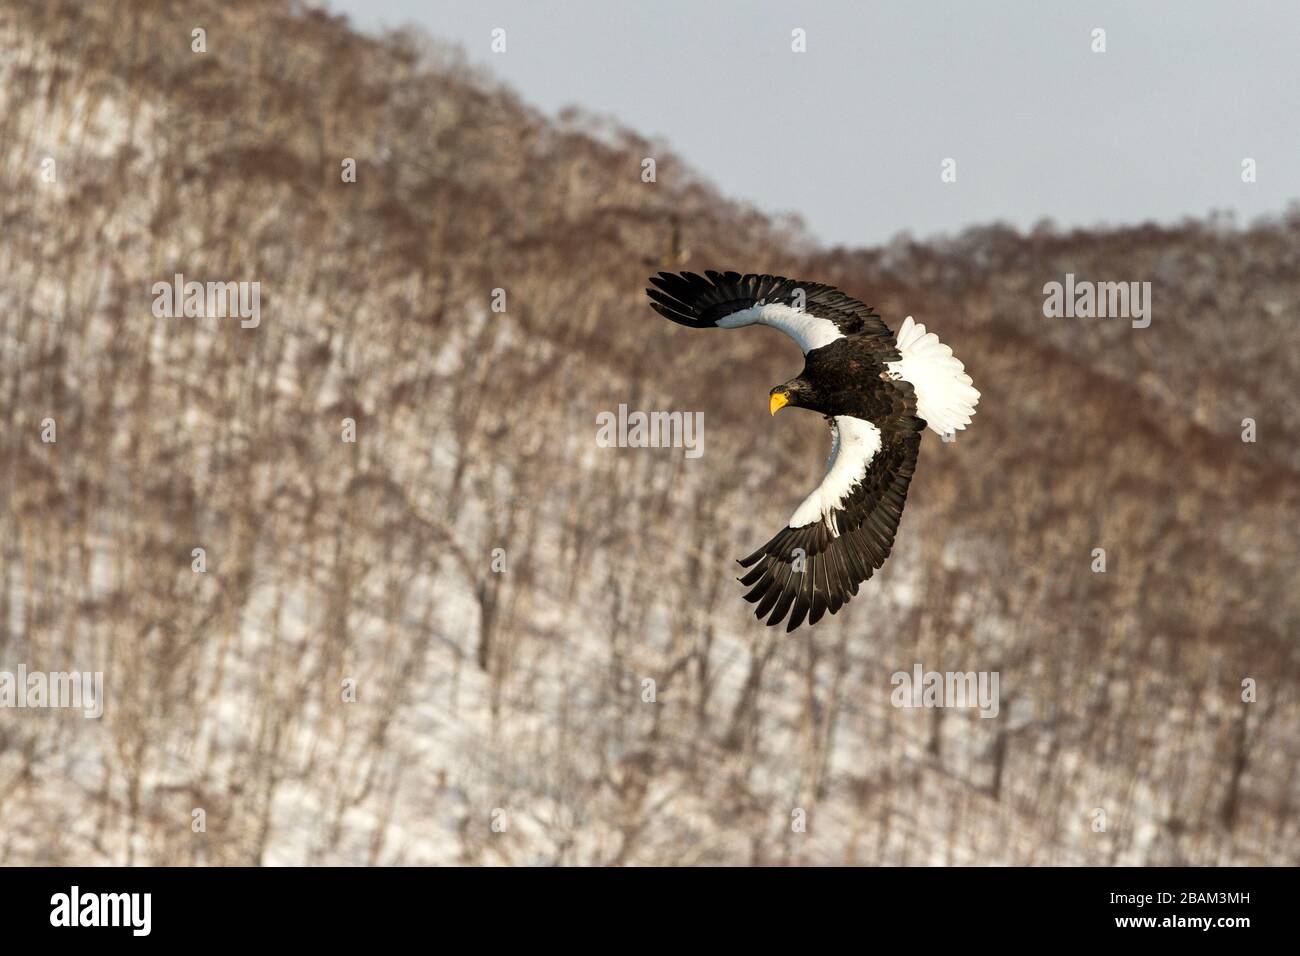 L'aigle marin de Steller volait devant les montagnes d'hiver à Hokkaido, silhouette d'oiseau. Beau paysage naturel en hiver. Montagne couverte par Banque D'Images